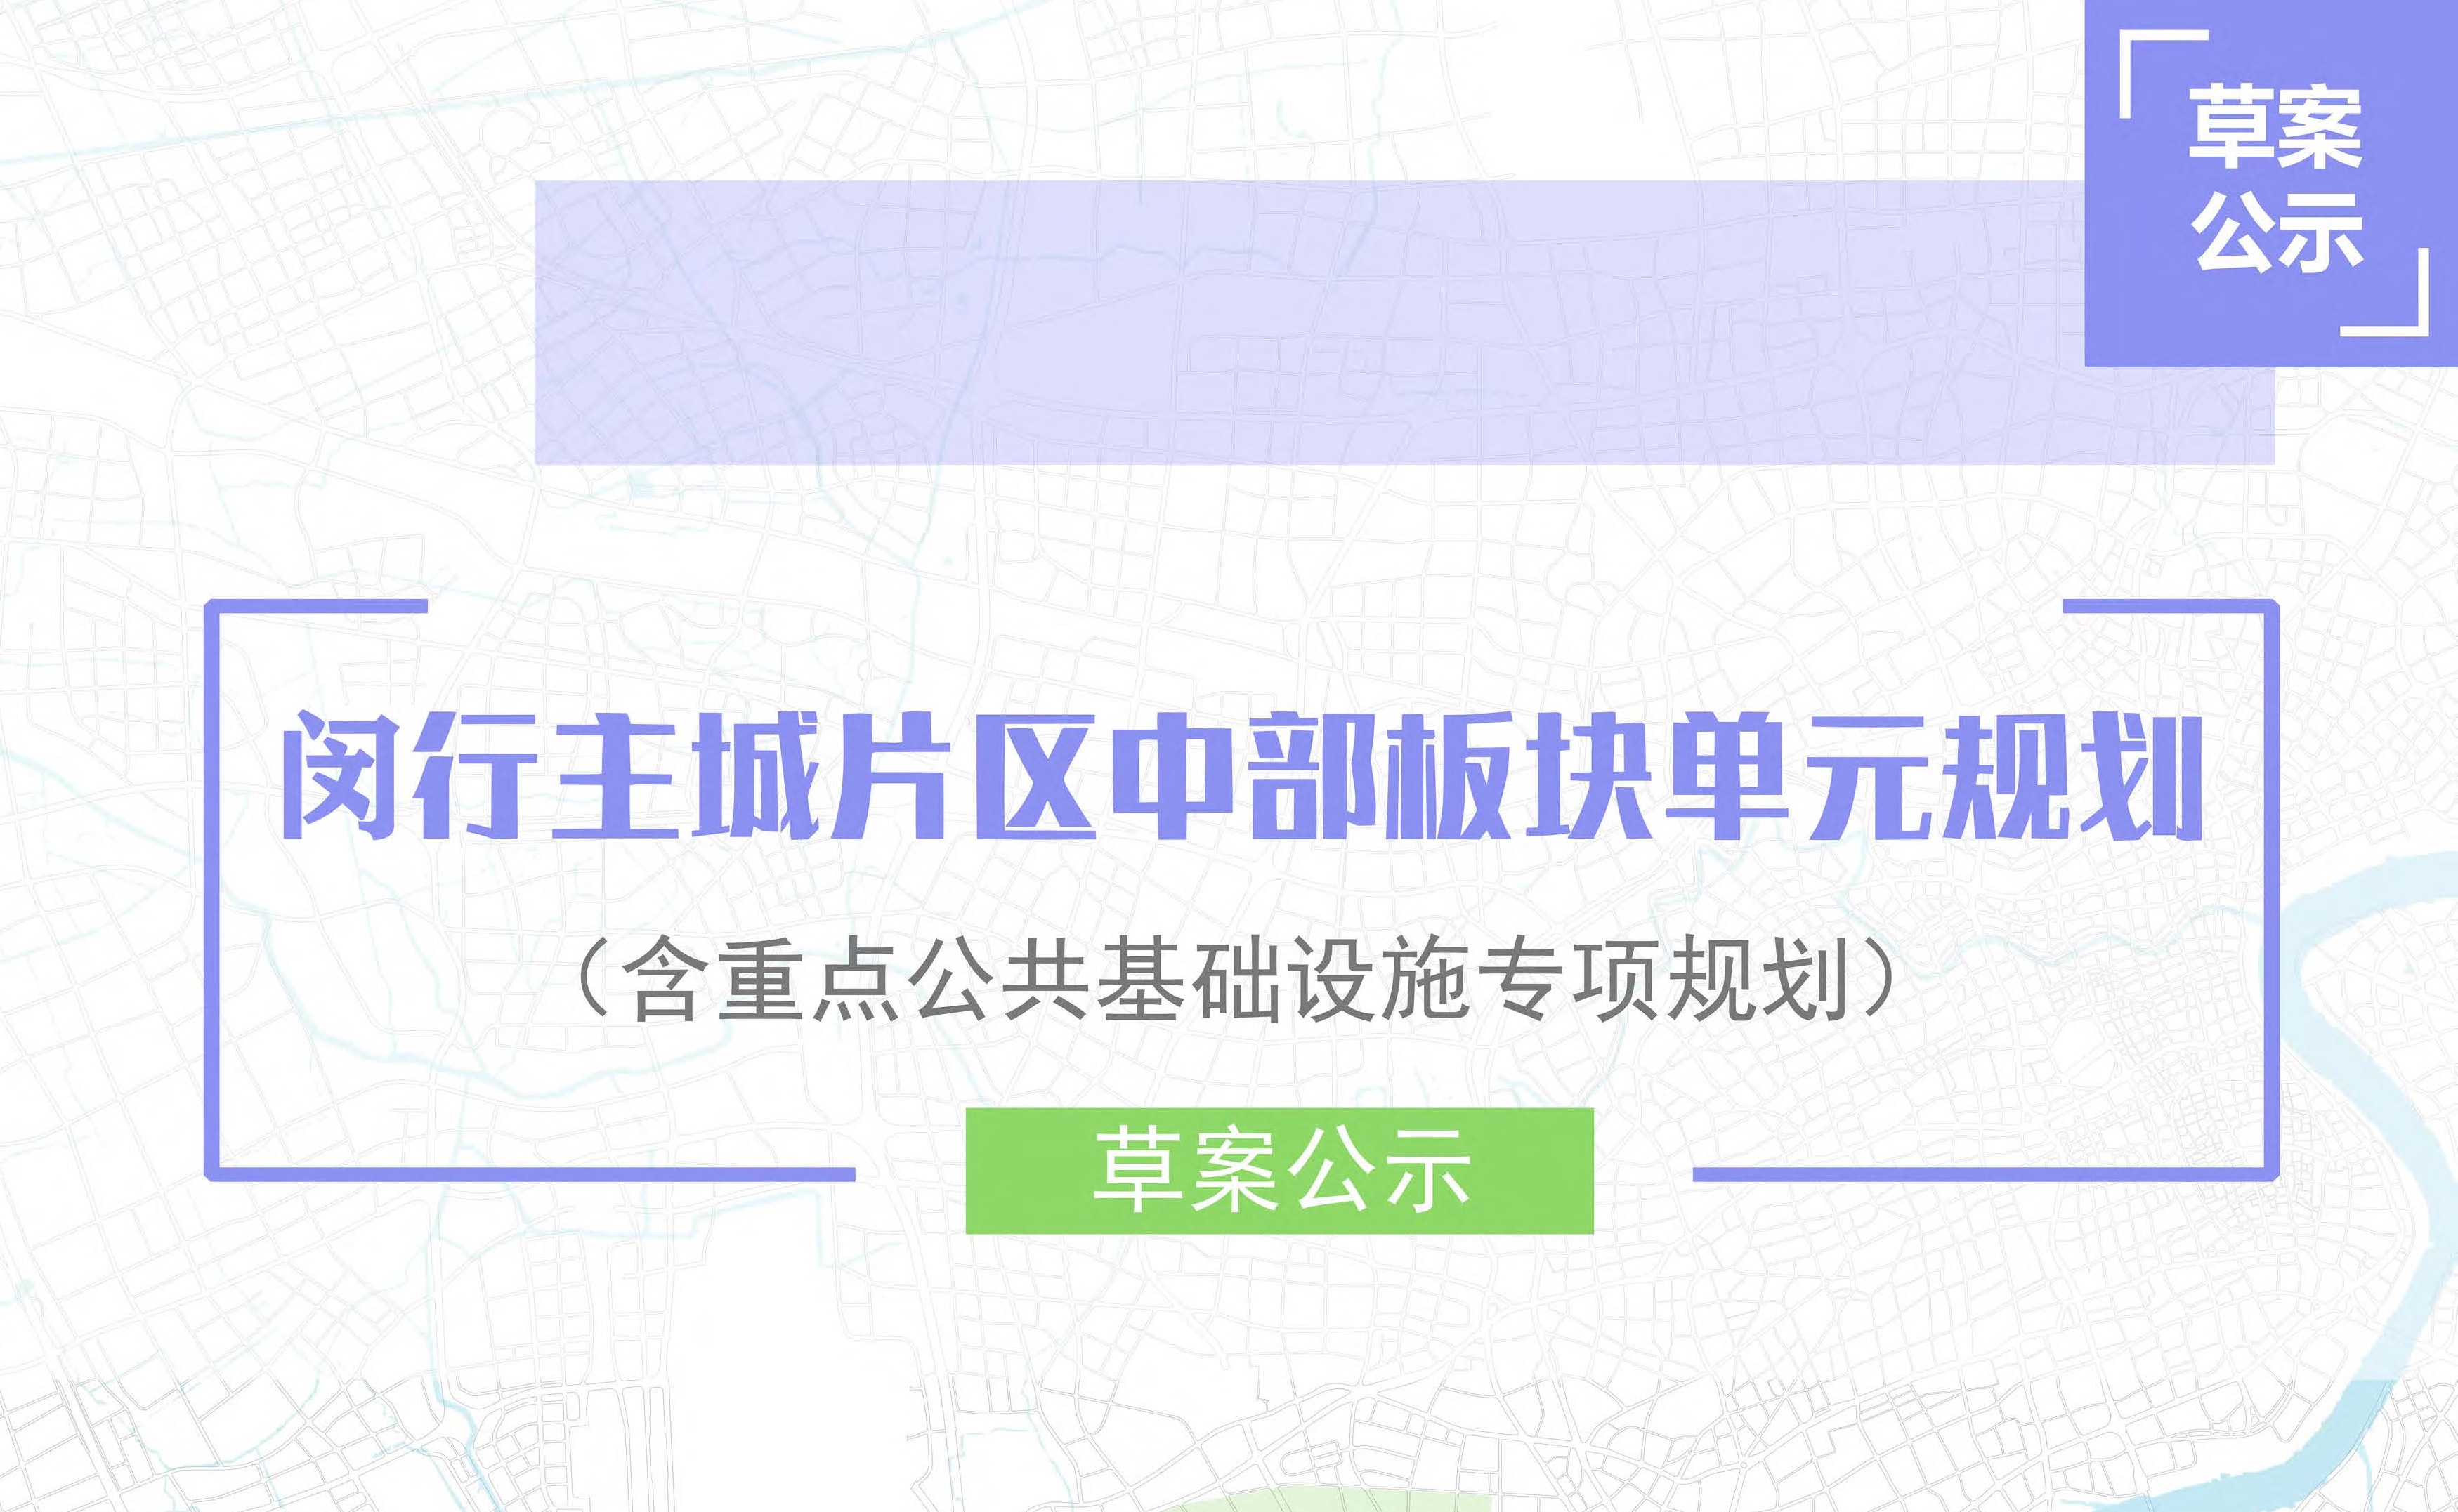 上海市闵行主城片区中部板块单元规划草案公示稿-草案公示公告1-1.jpg